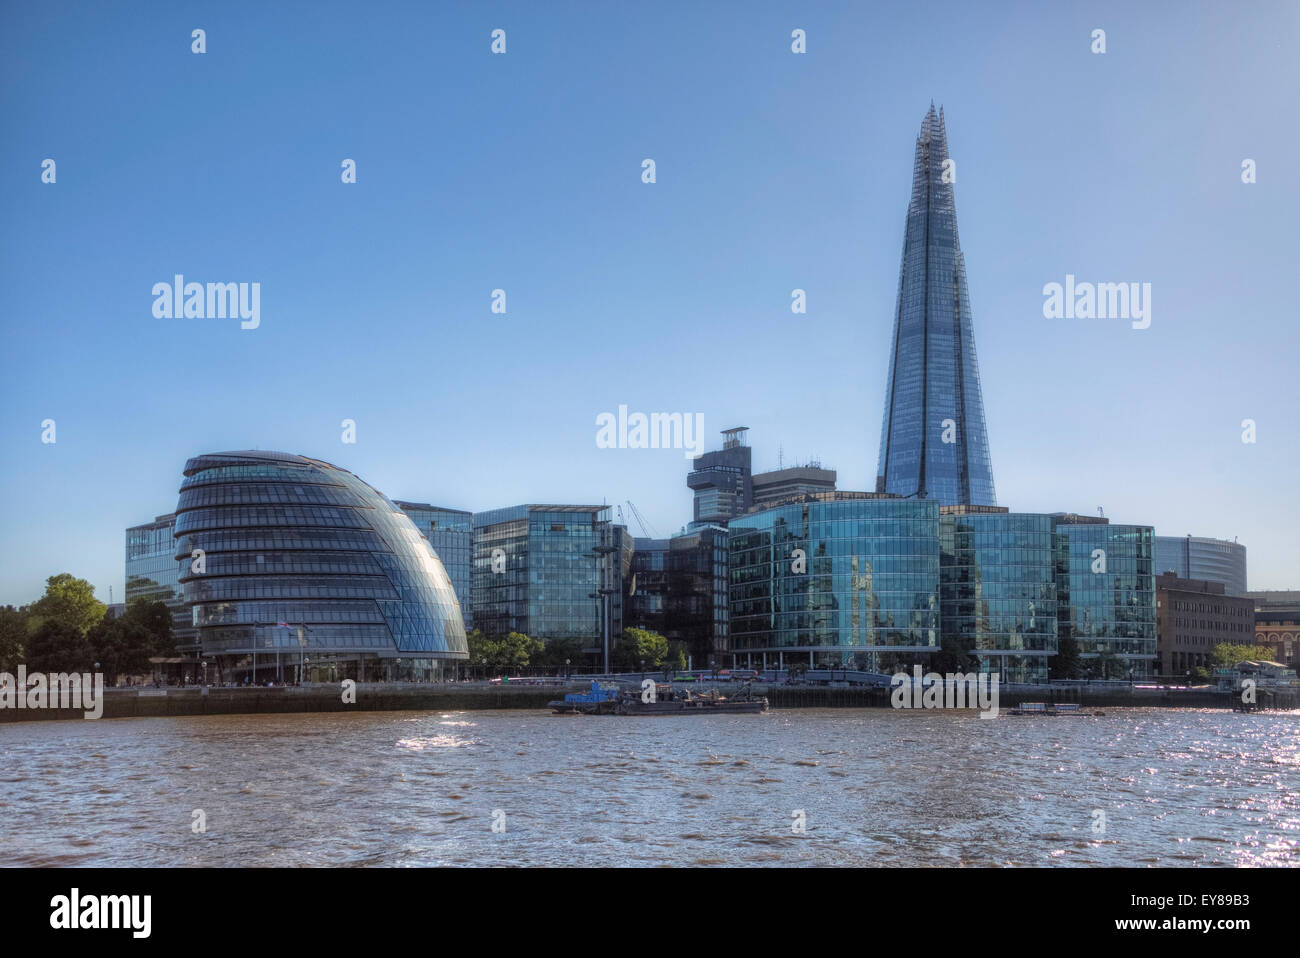 City of London, England, United Kingdom Stock Photo